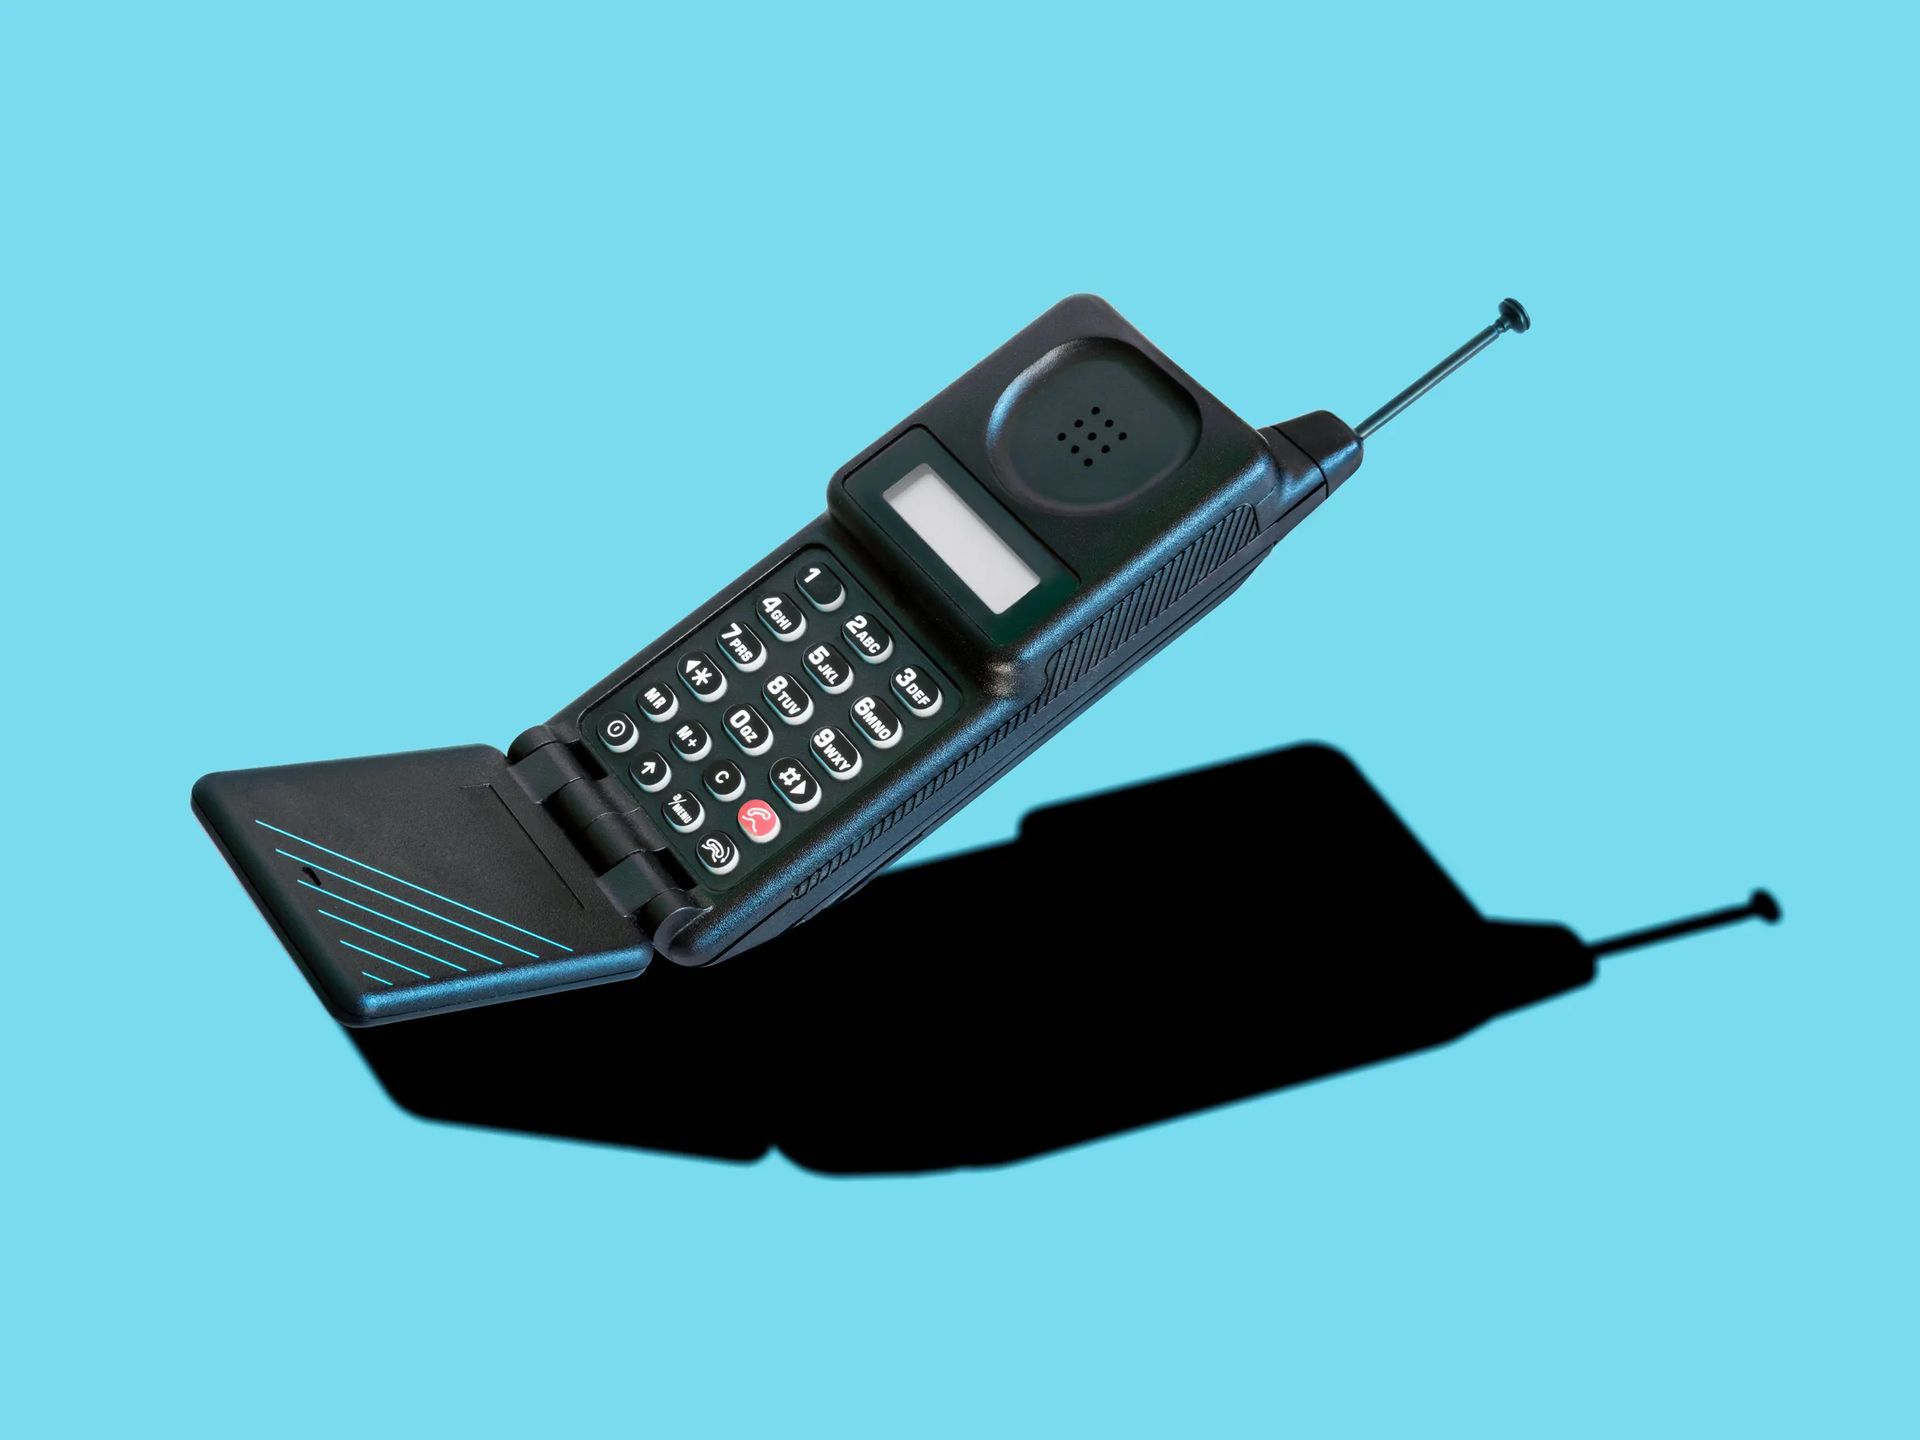 Best dumb phones: